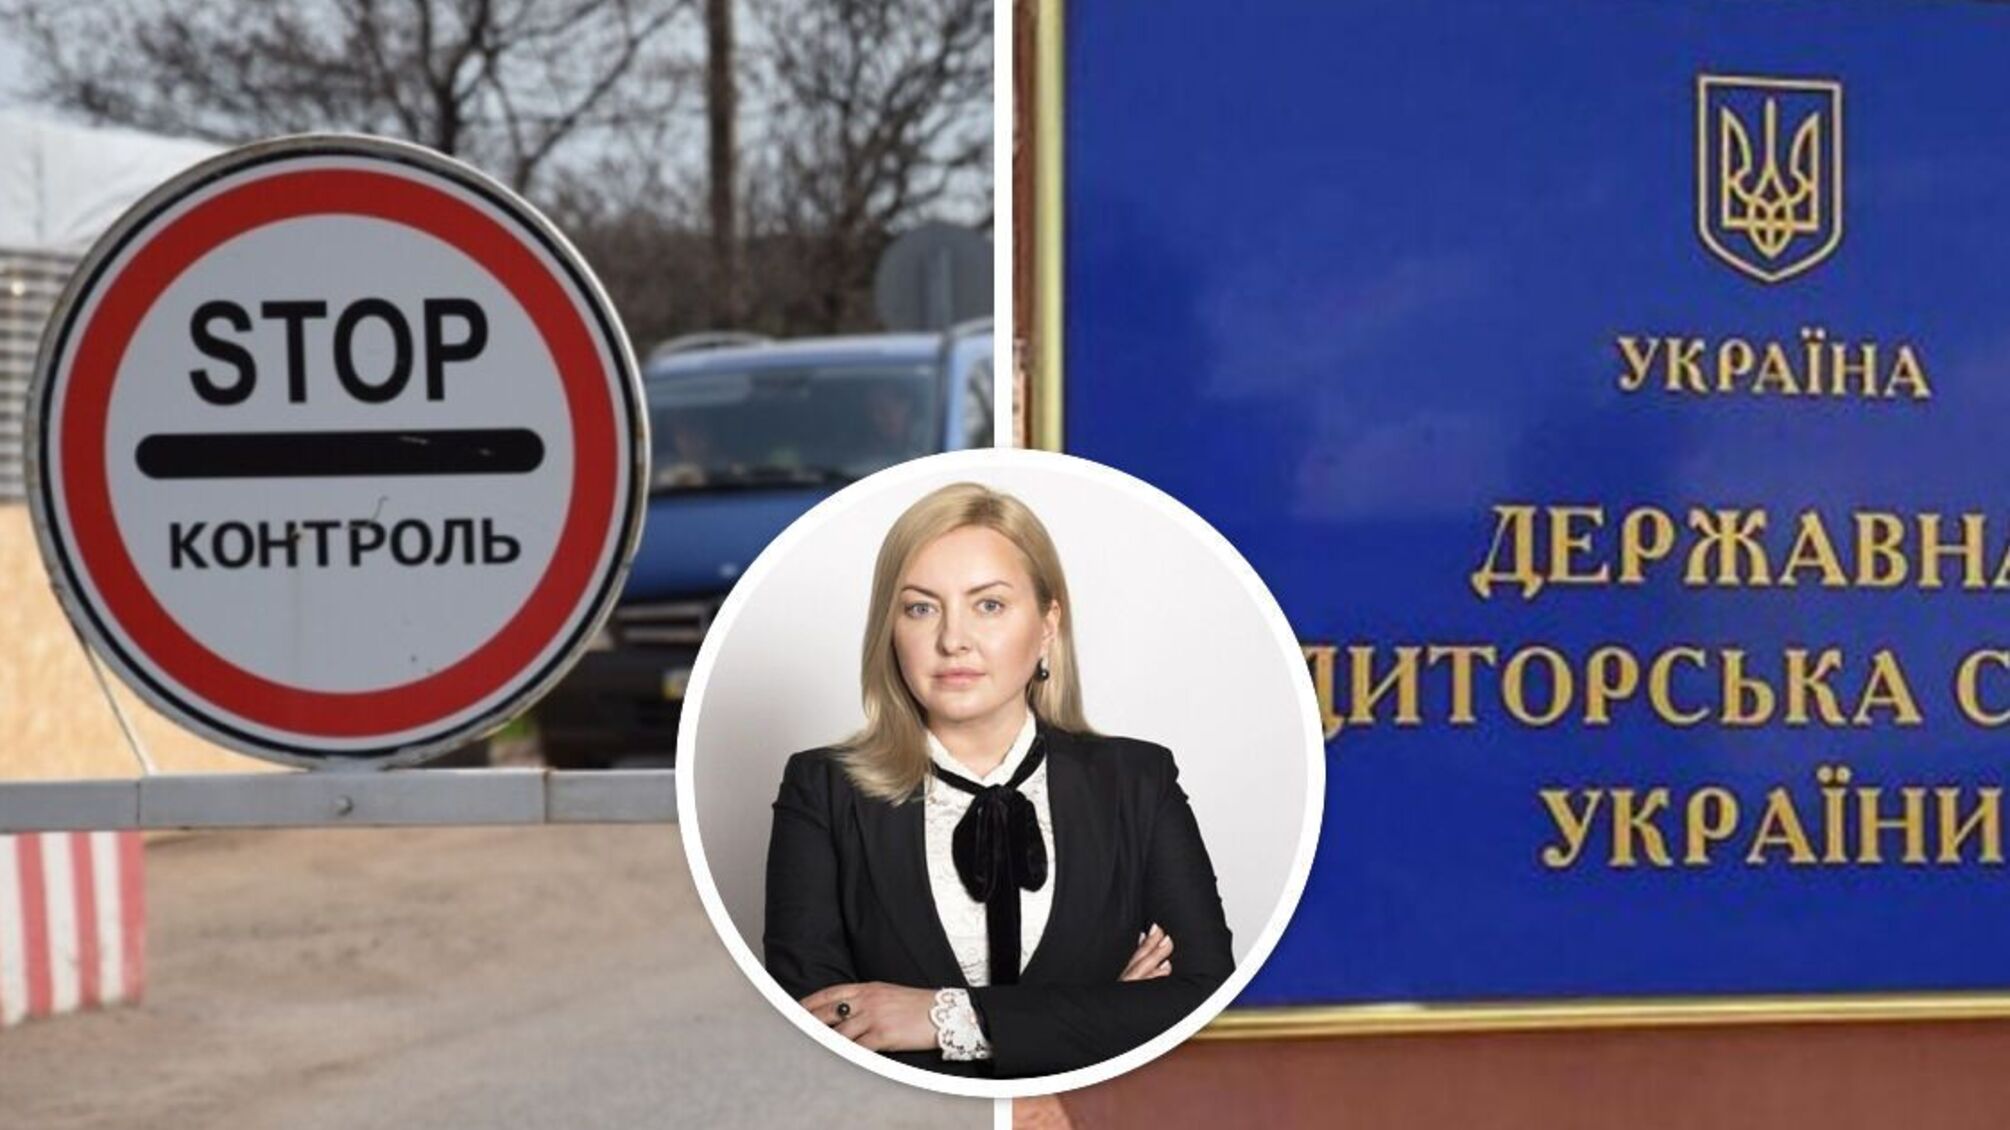 Тетяна Єгорова-Луценко, ймовірно, організувала виїзд за кордон керівника підрозділу Держаудитслужби: журналісти звернулися до ДБР